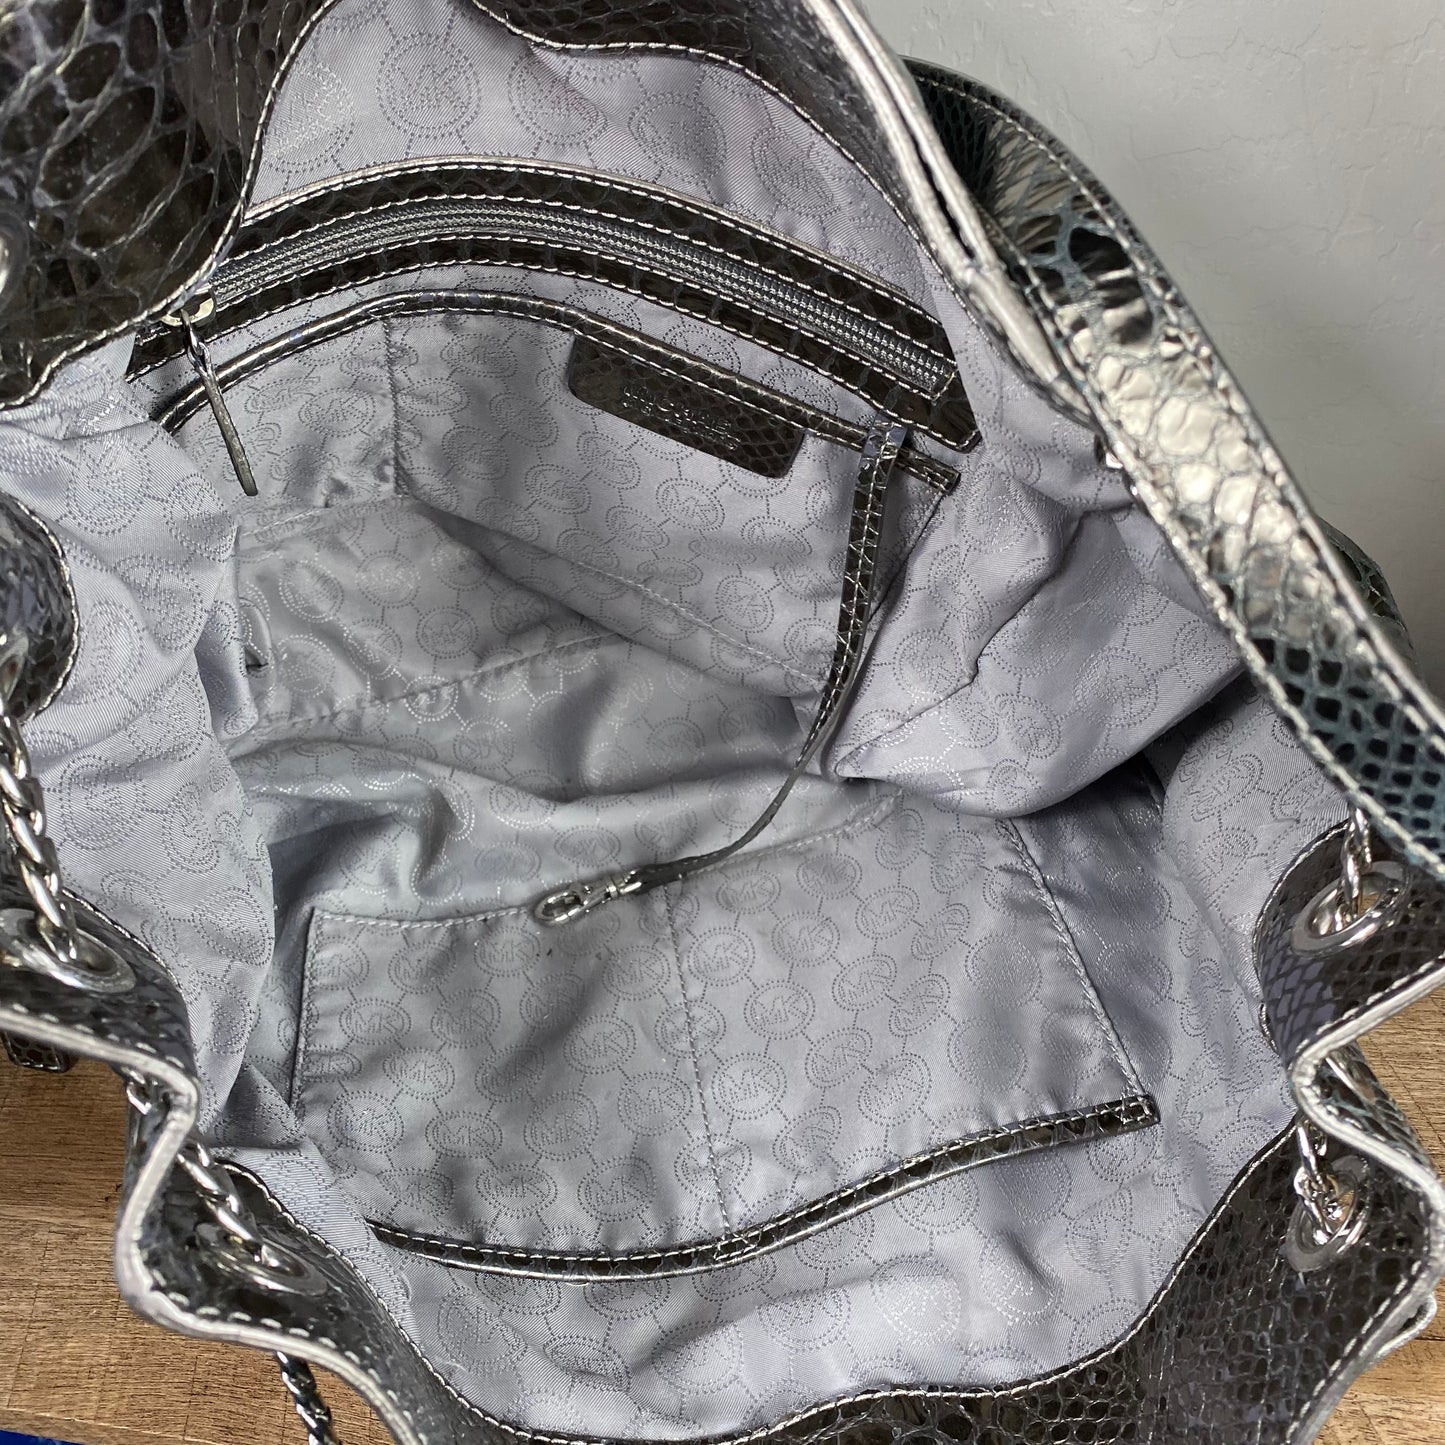 Michael Kors Jet Set Chain Shoulder Bag